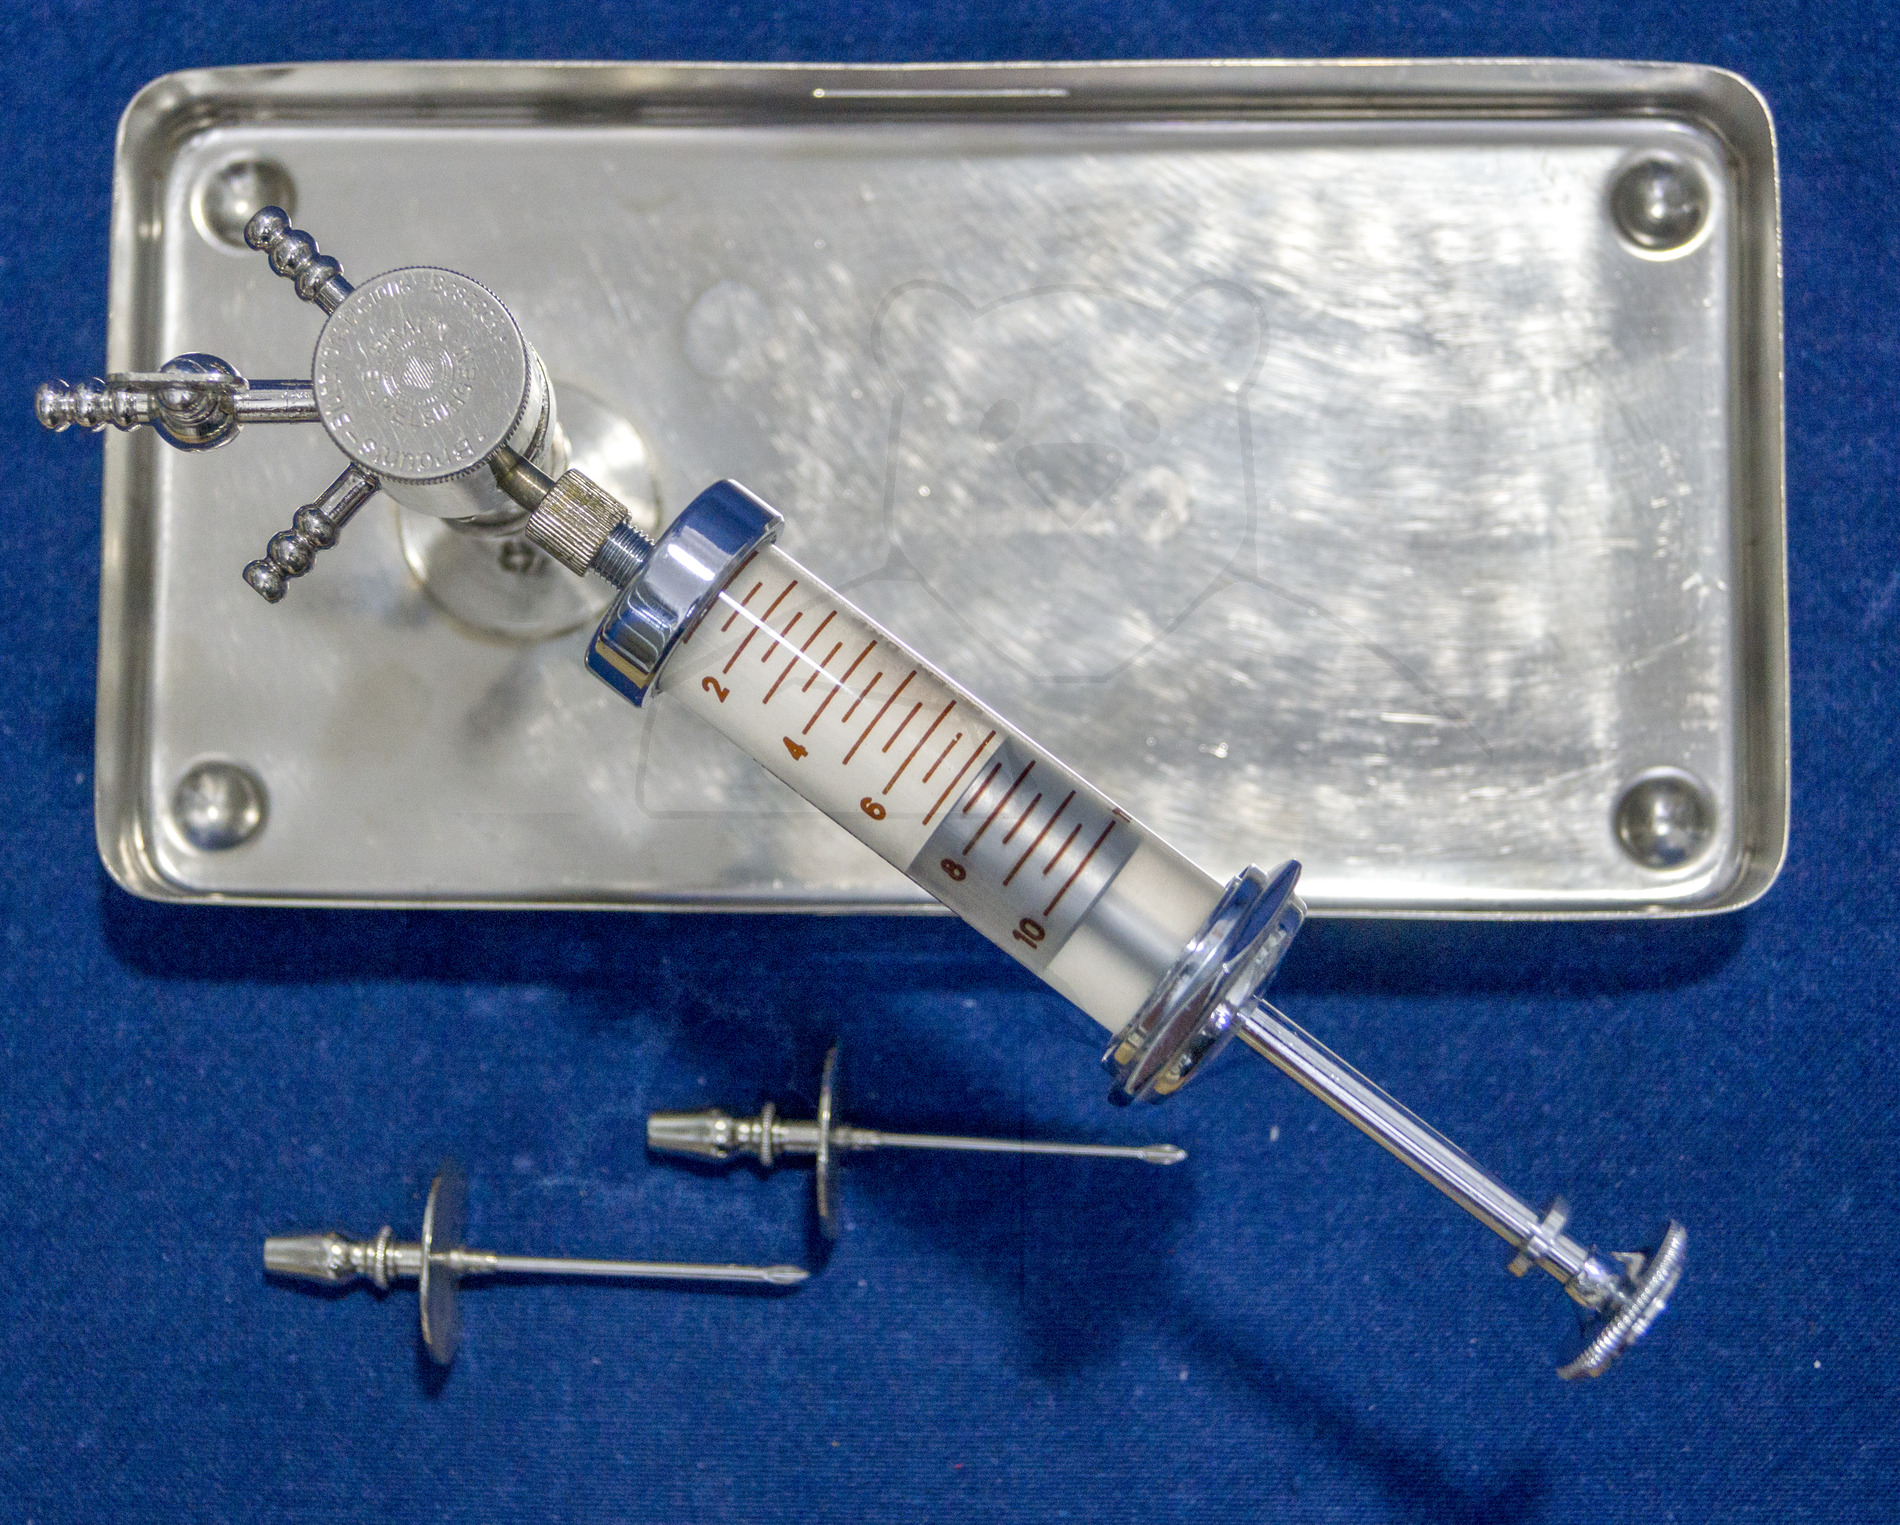 Set zur direkten Bluttransfusion, ca. 1940, Aufgesetzte Transferspritze mit Drei-Wege-Verteiler, Obere Position, Schlauch zum Empfänger